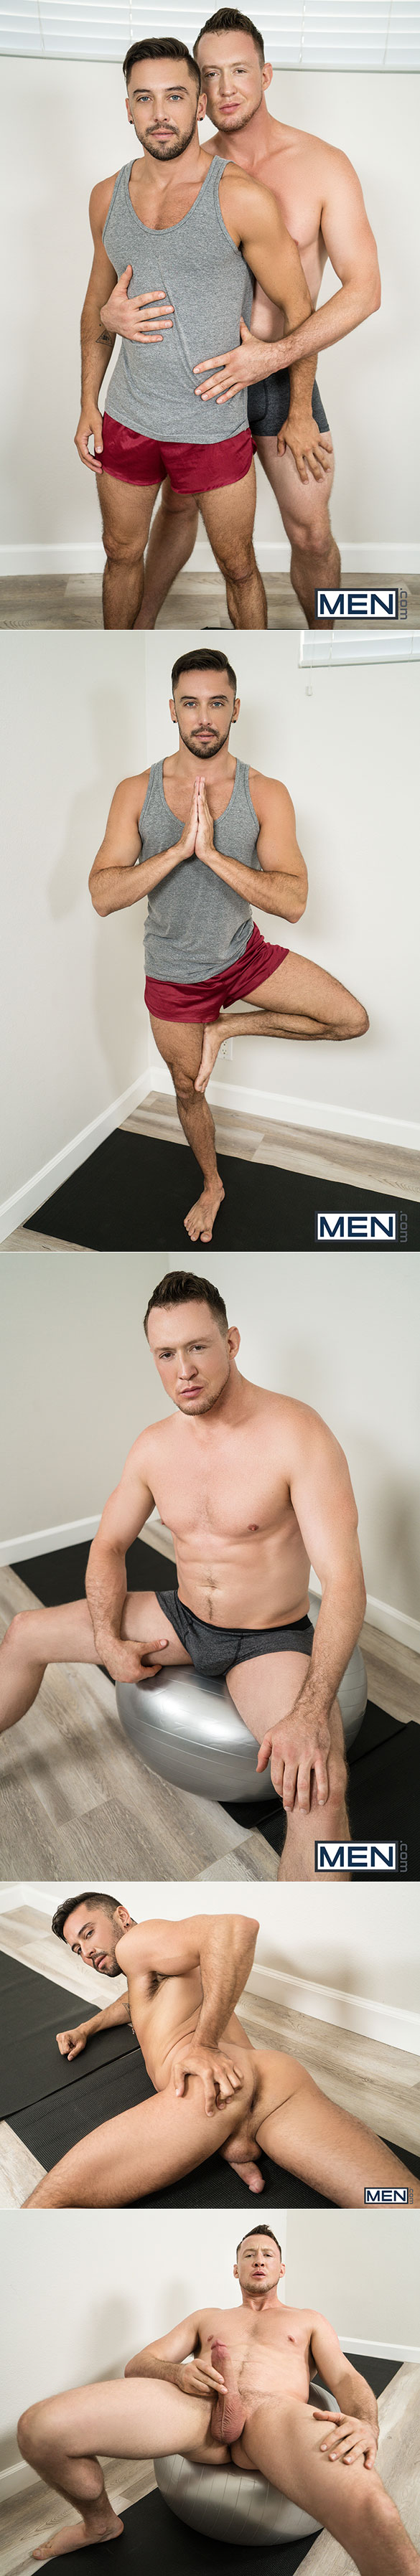 Men.com: Pierce Paris pounds Shane Jackson in "Power Yoga, Part 3"